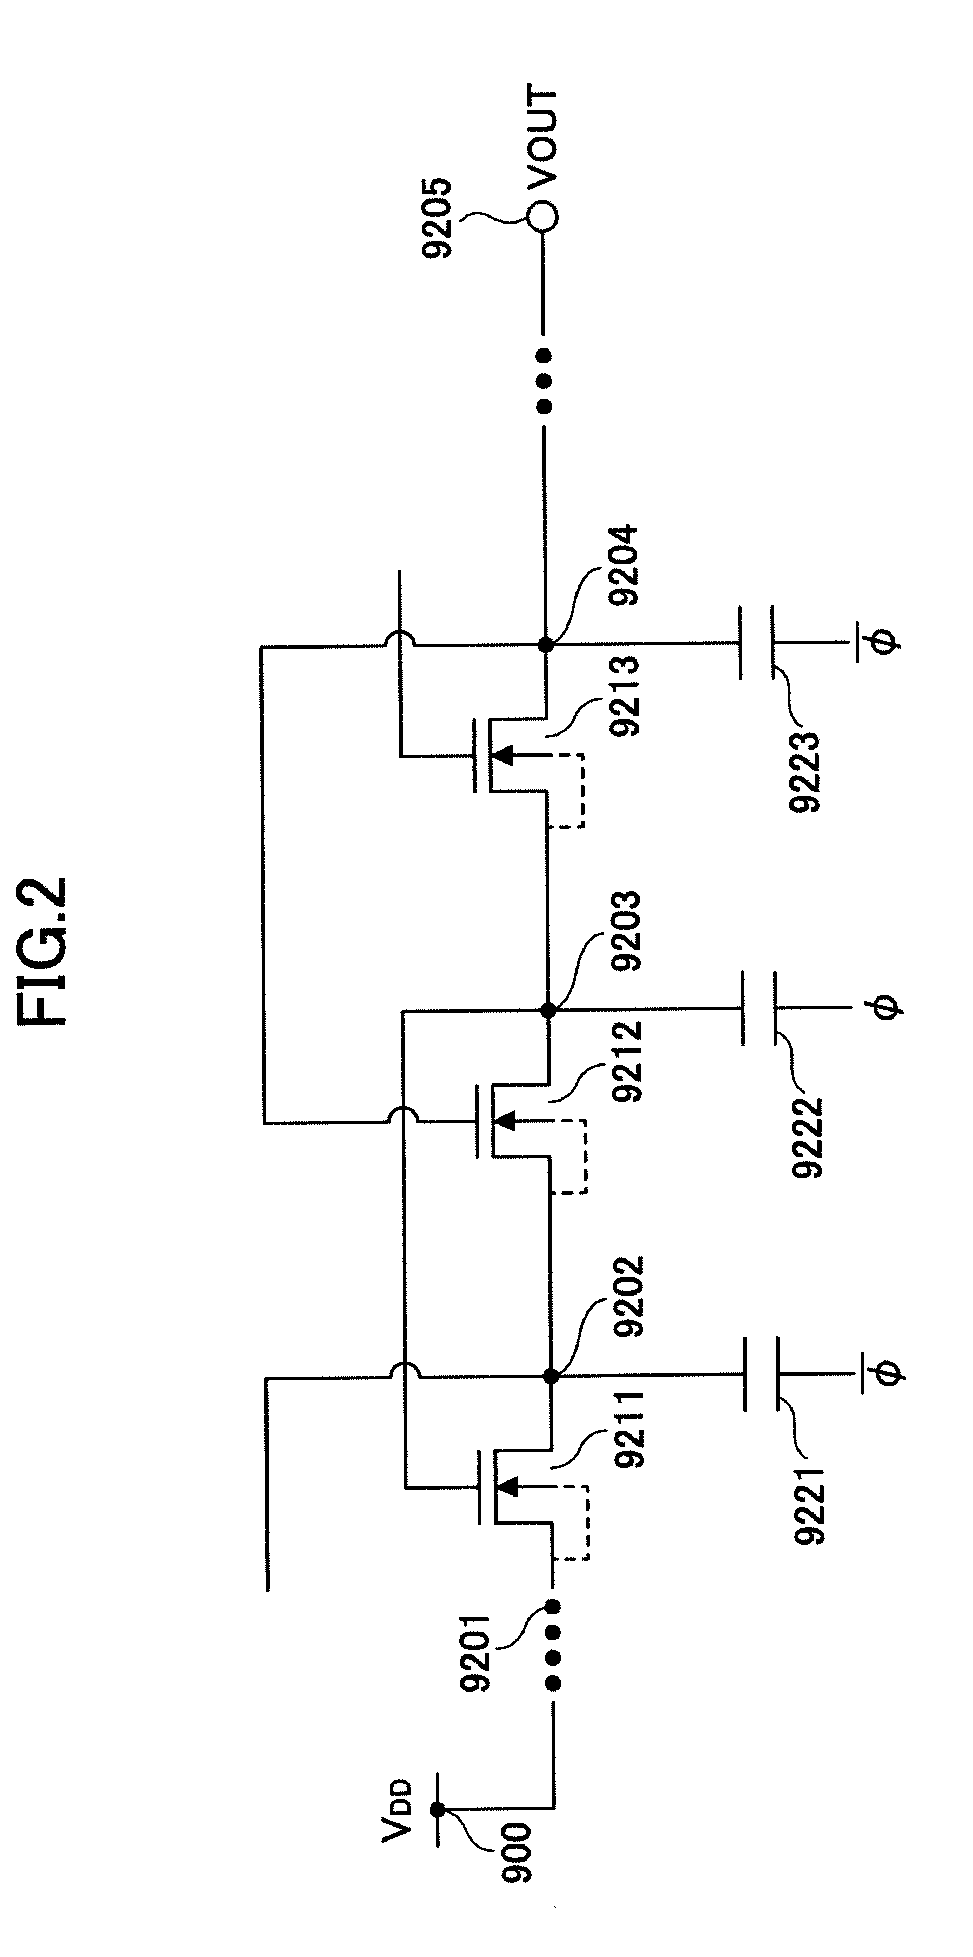 Voltage generating circuit